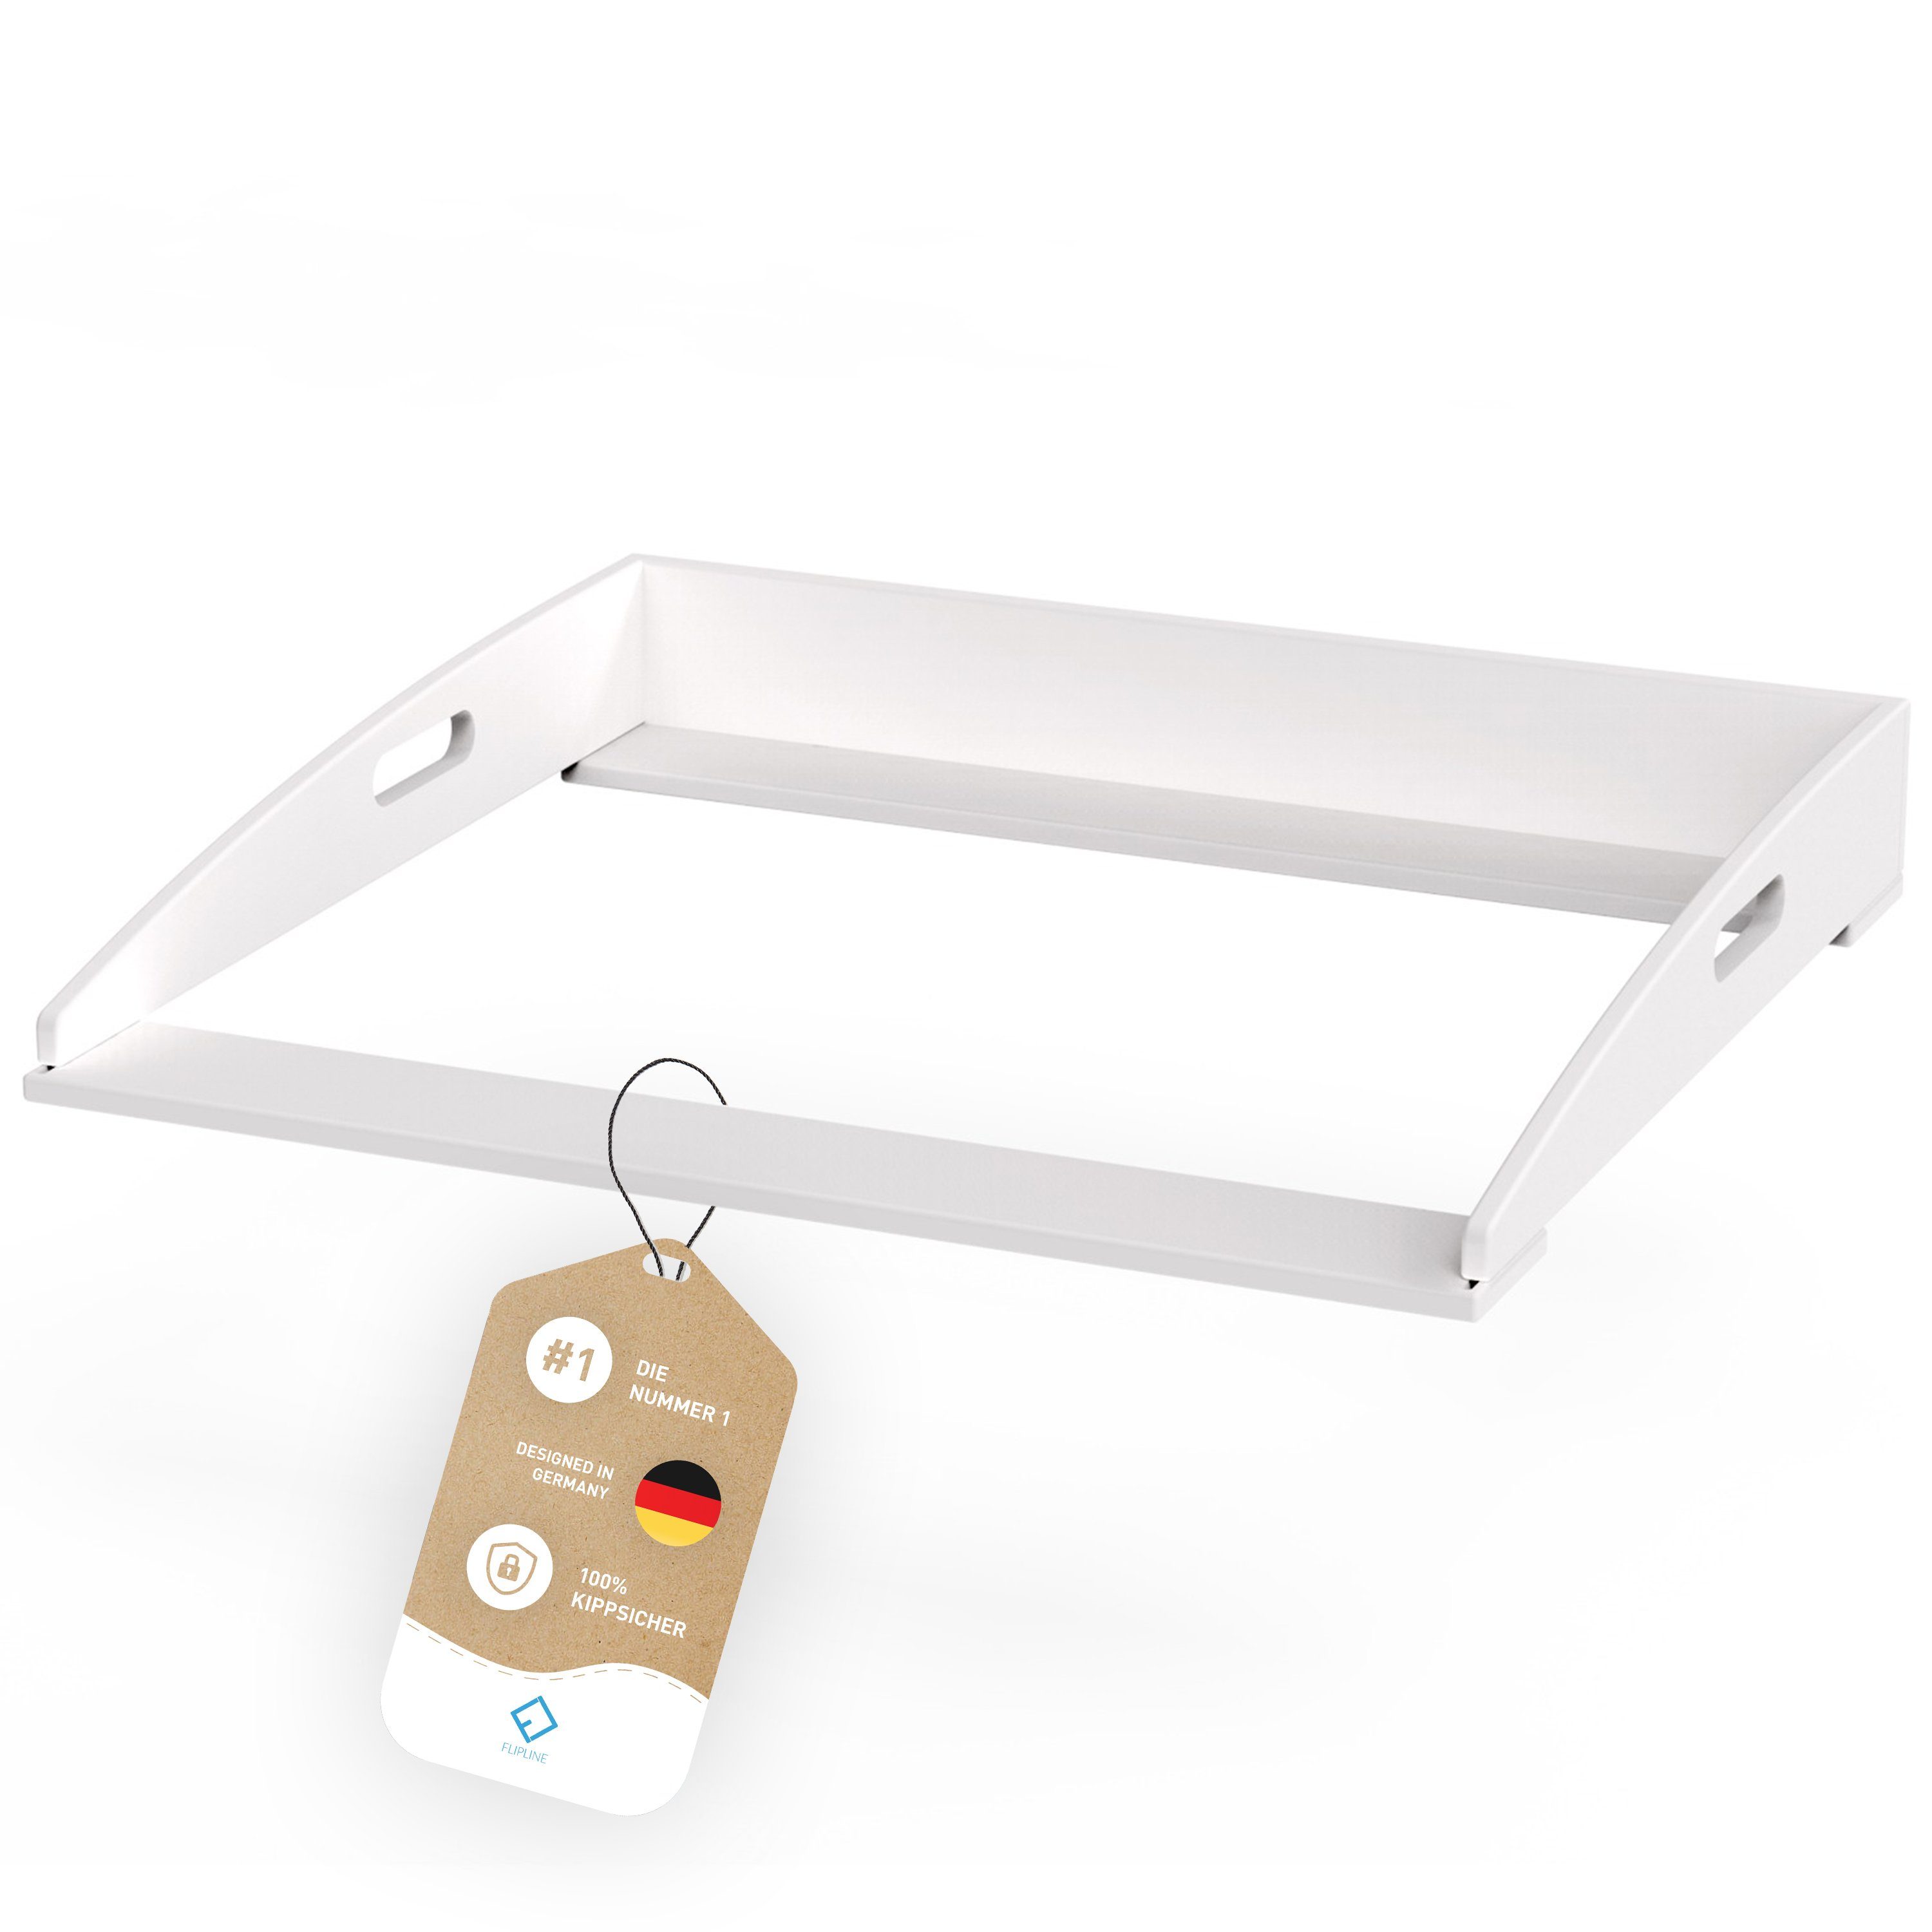 FLIPLINE® Wickelaufsatz für IKEA Hemnes Kommode [85x75x13cm], INKL. 2-Stufen-Sicherheit an Wand und Kommode